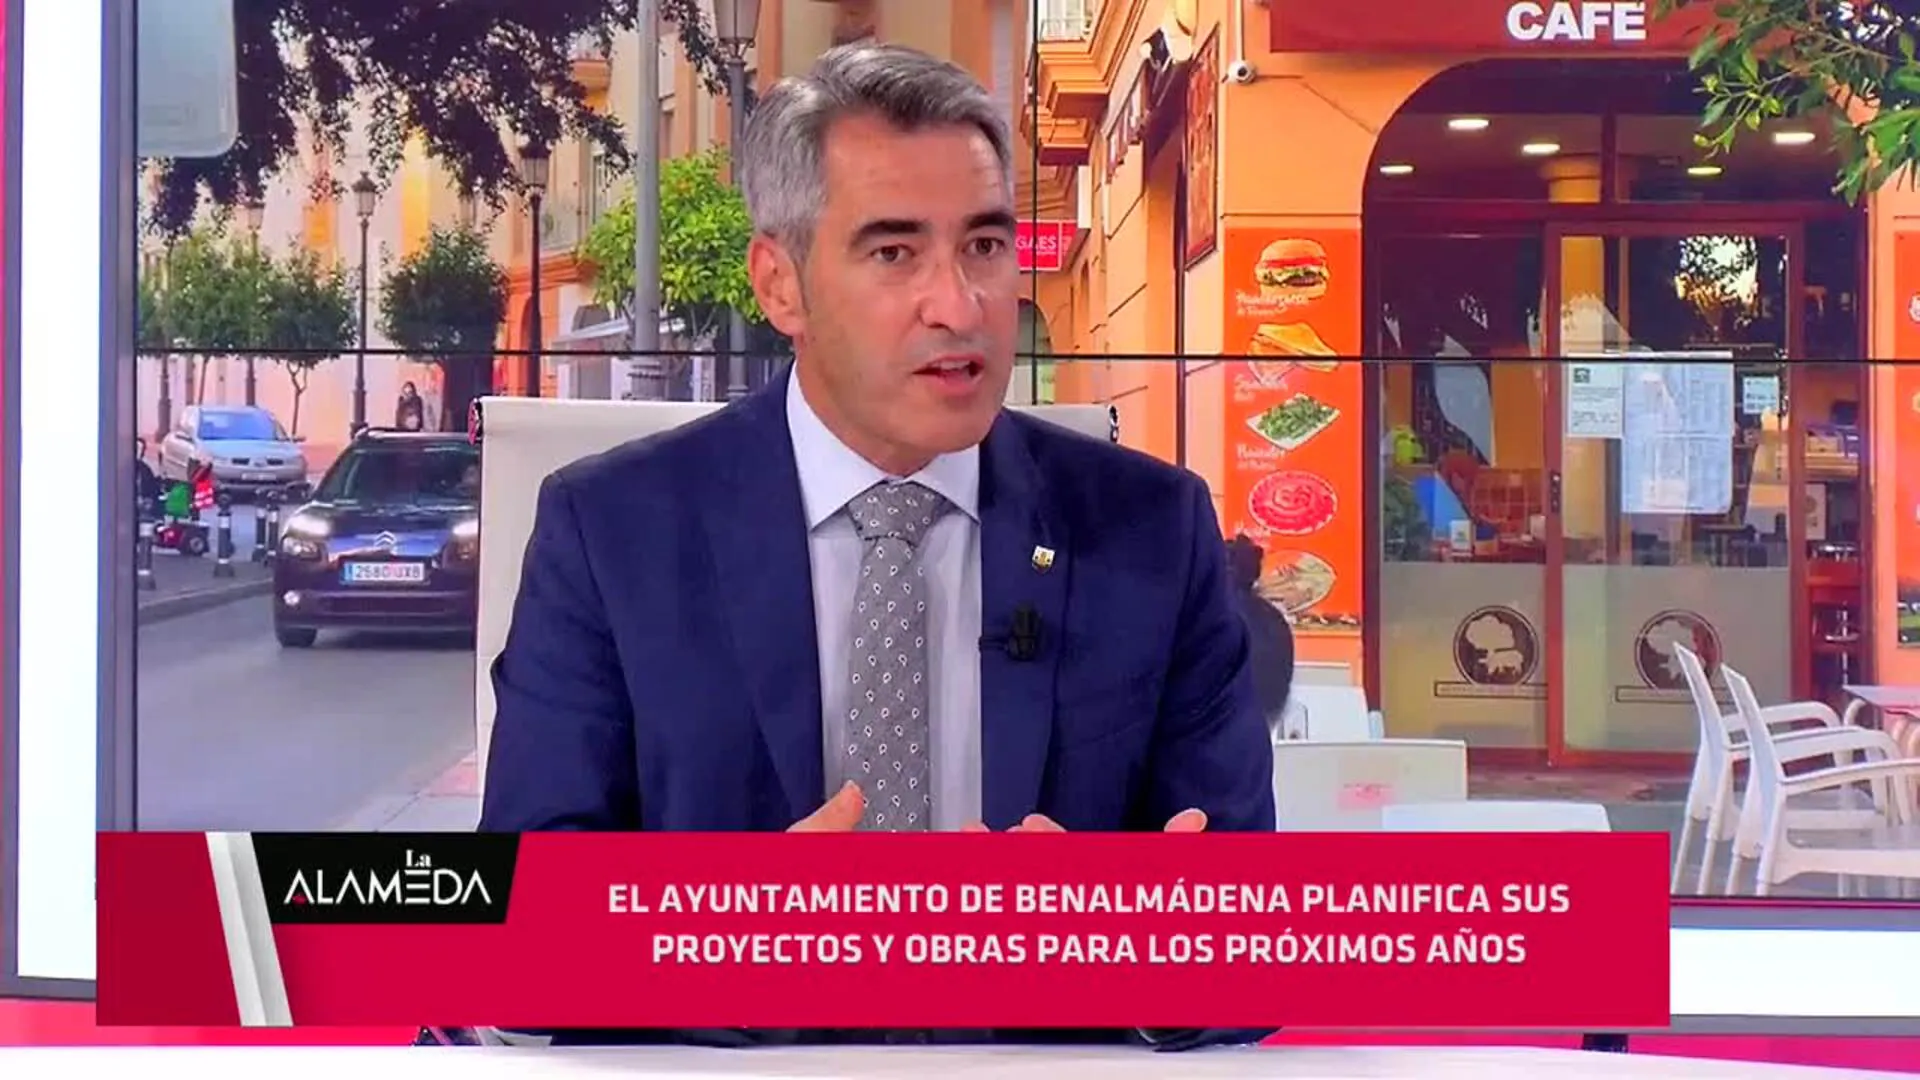 Segundo bloque de La Alameda: entrevista al alcalde de Benalmádena, Víctor Navas